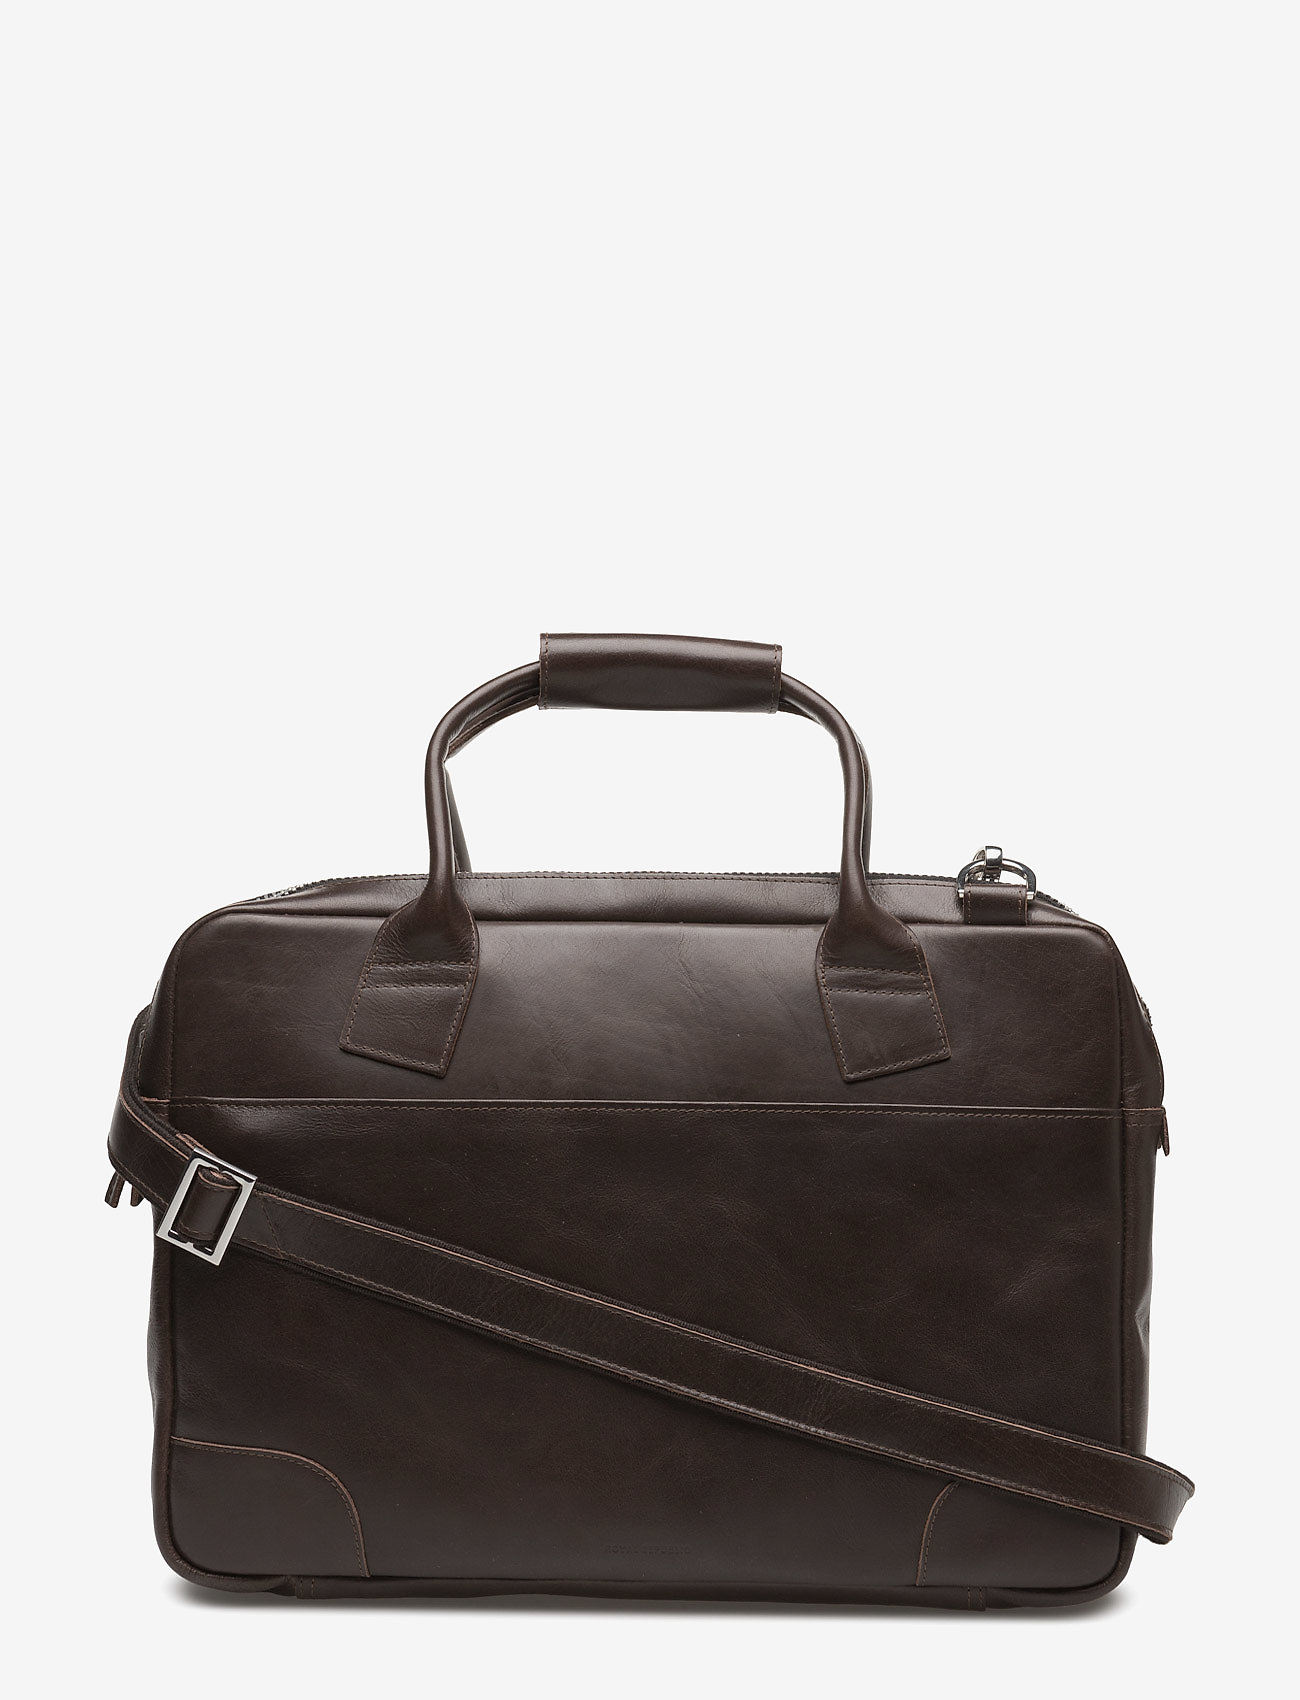 Royal RepubliQ - Nano big zip bag leather - brown - 1